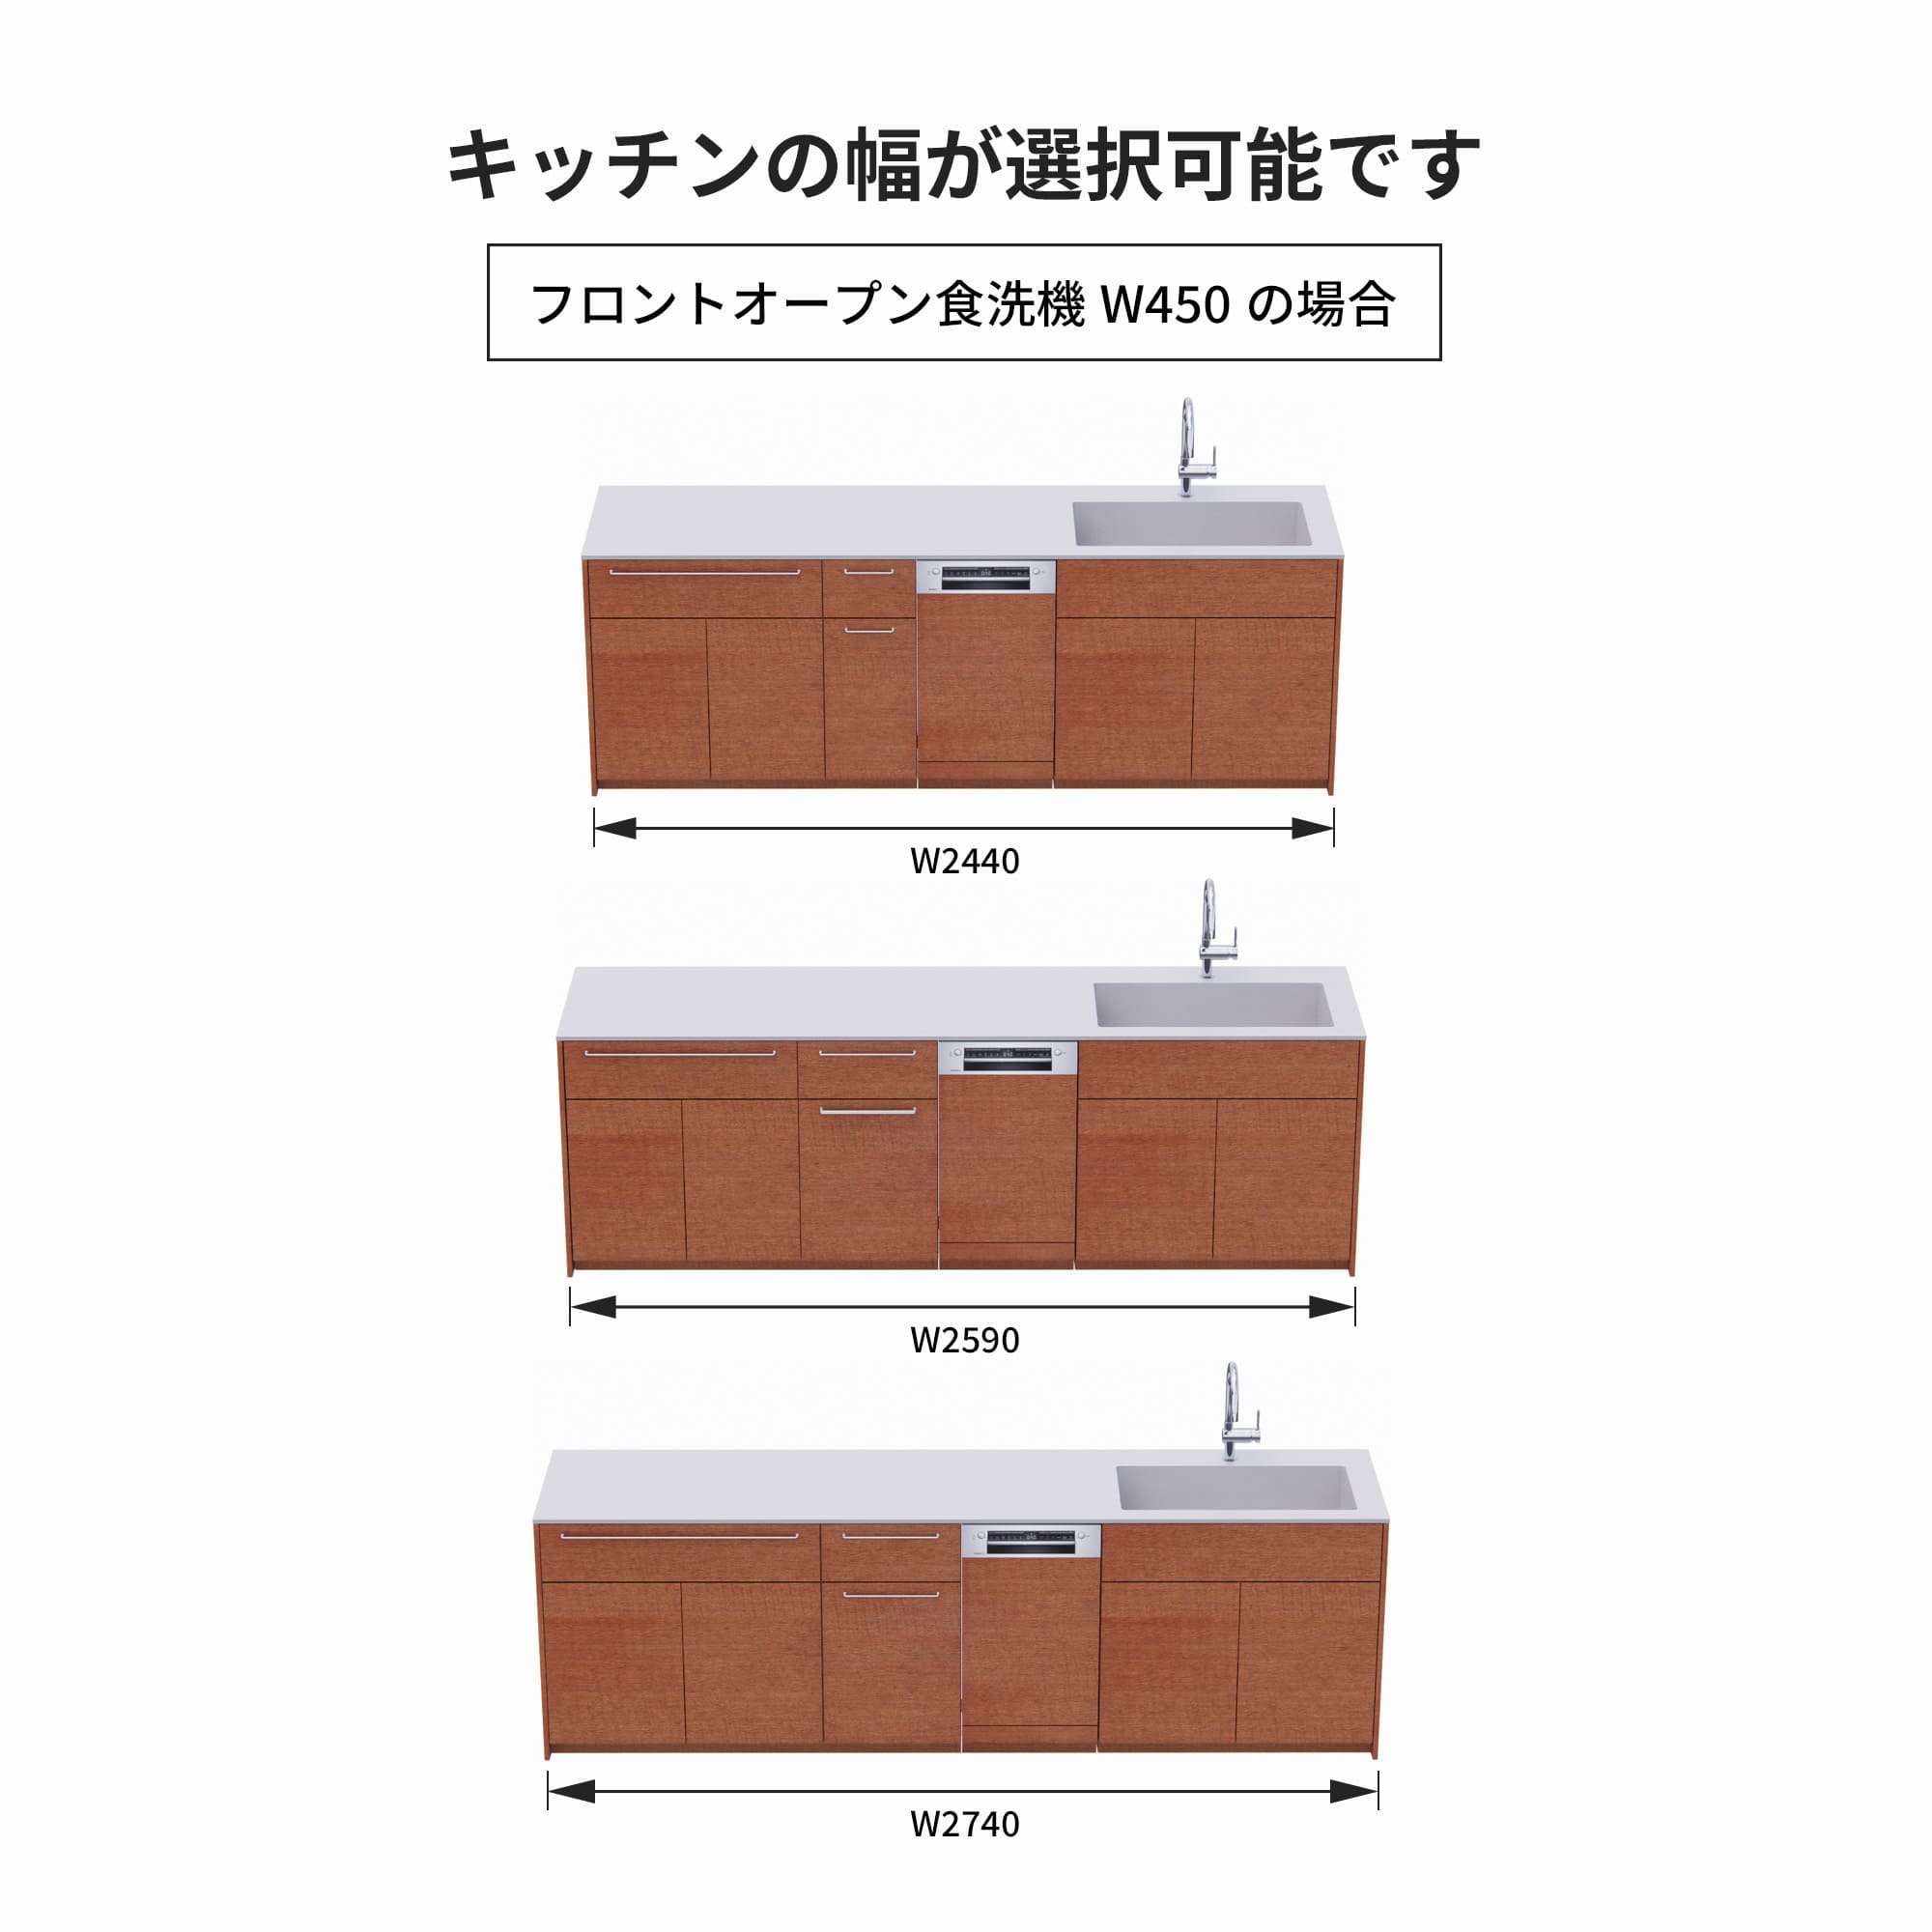 木製システムキッチン 壁付け型 W2440～2740・コンロなし / オーブンなし / 食洗機あり KB-KC022-27-G183 フロントオープン450の場合